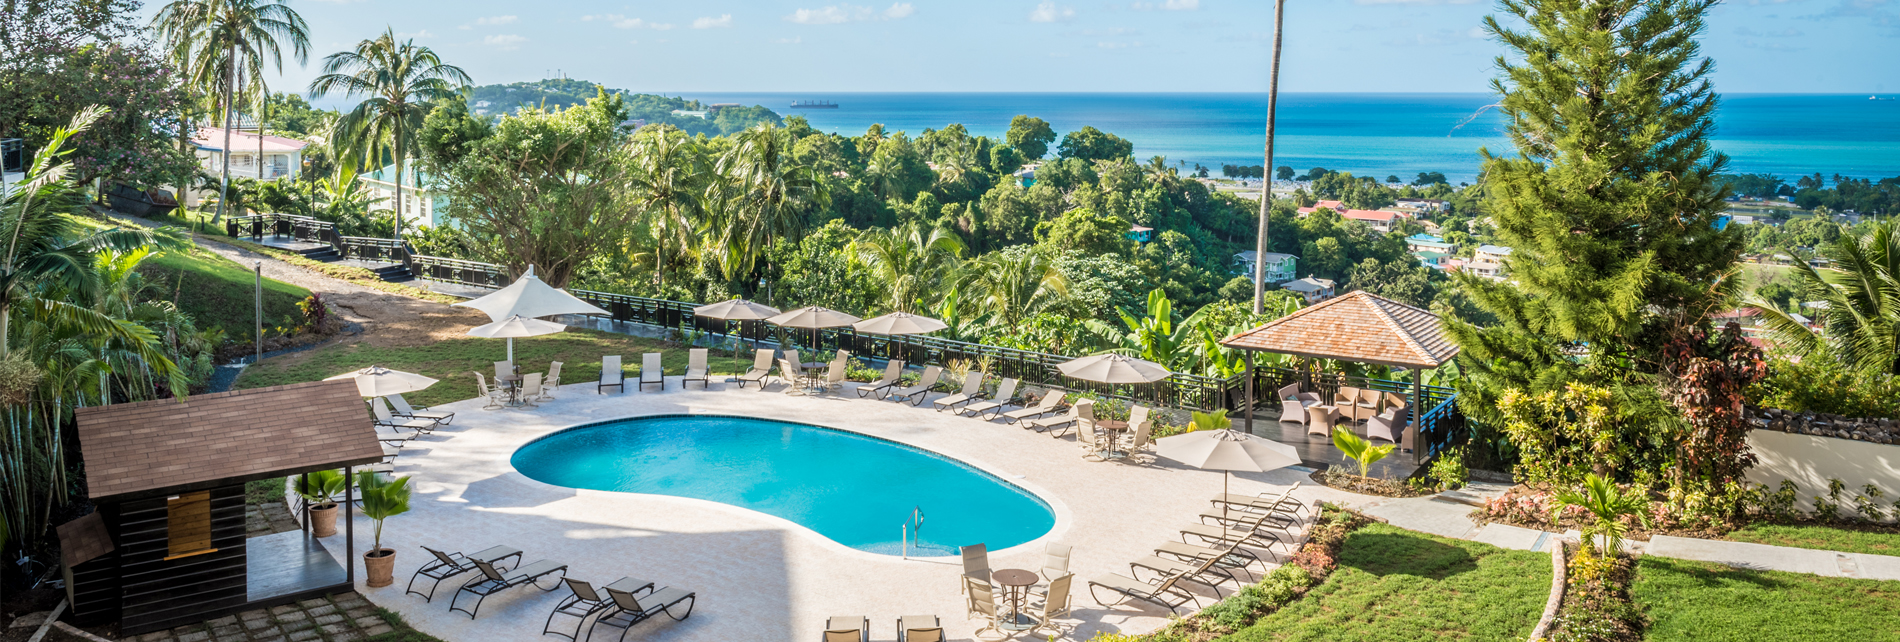 Bel Jou Hotel - St. Lucia